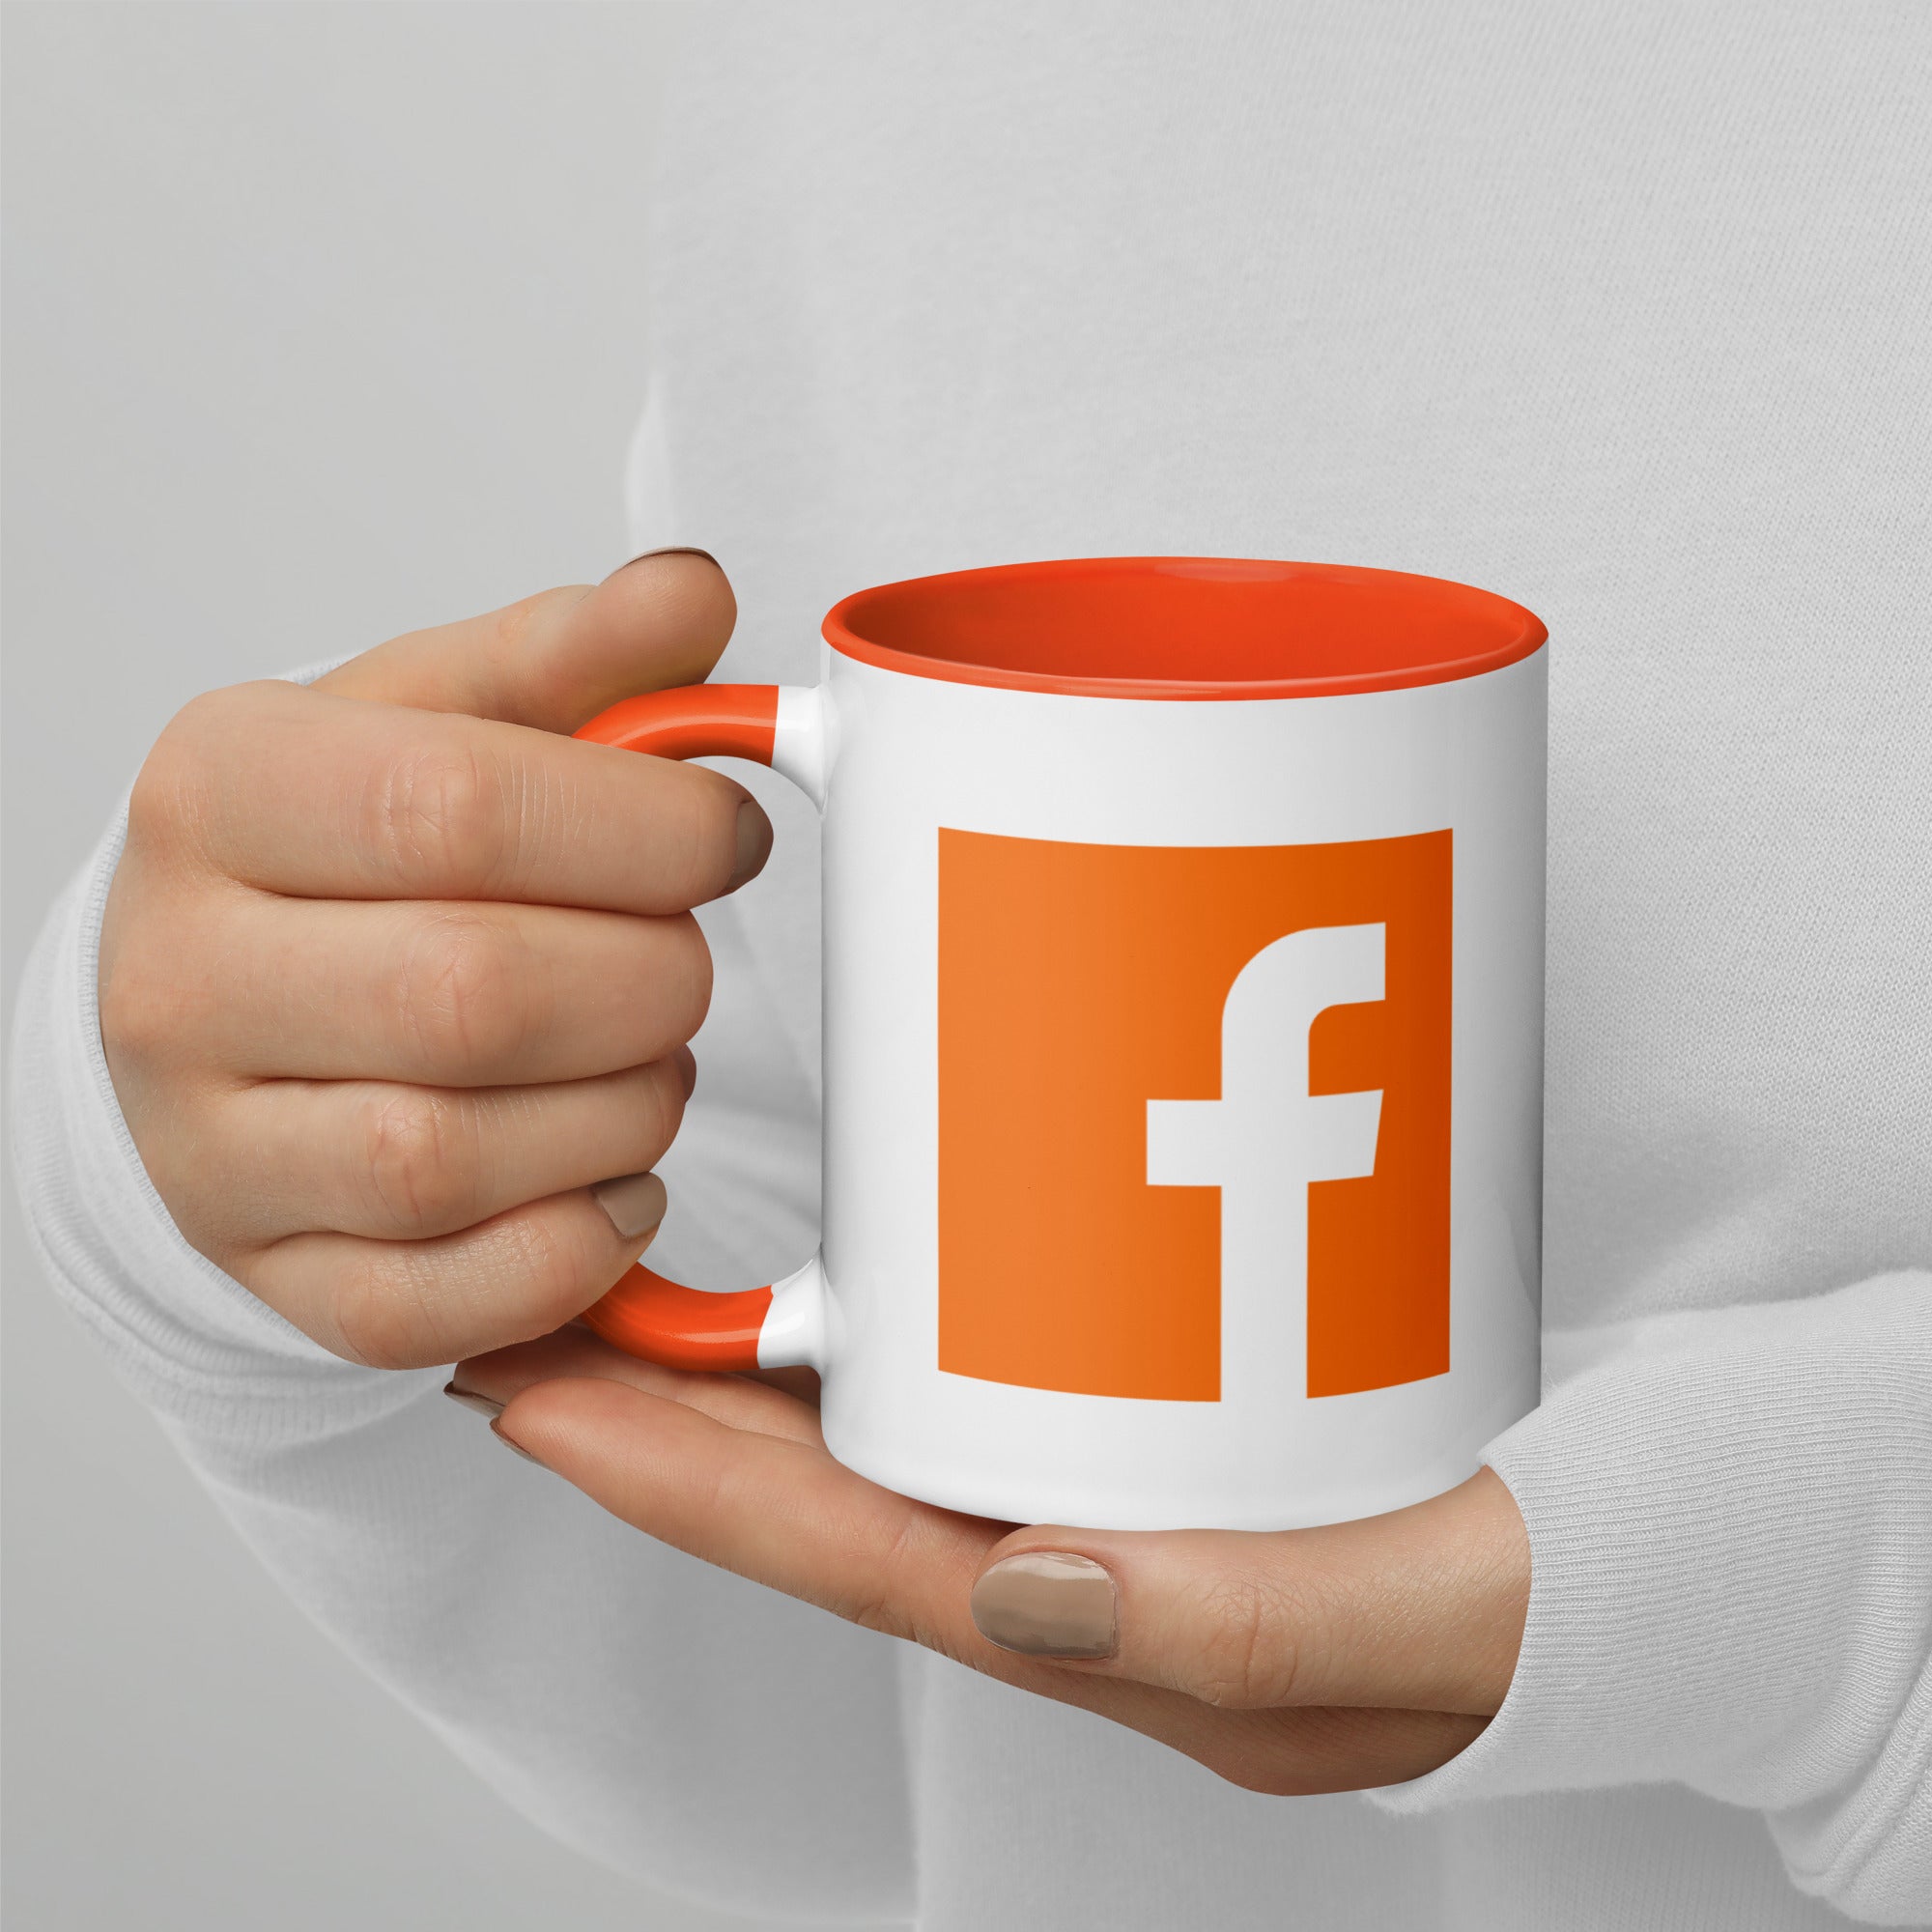 model holding an orange mug displaying an orange facebook logo